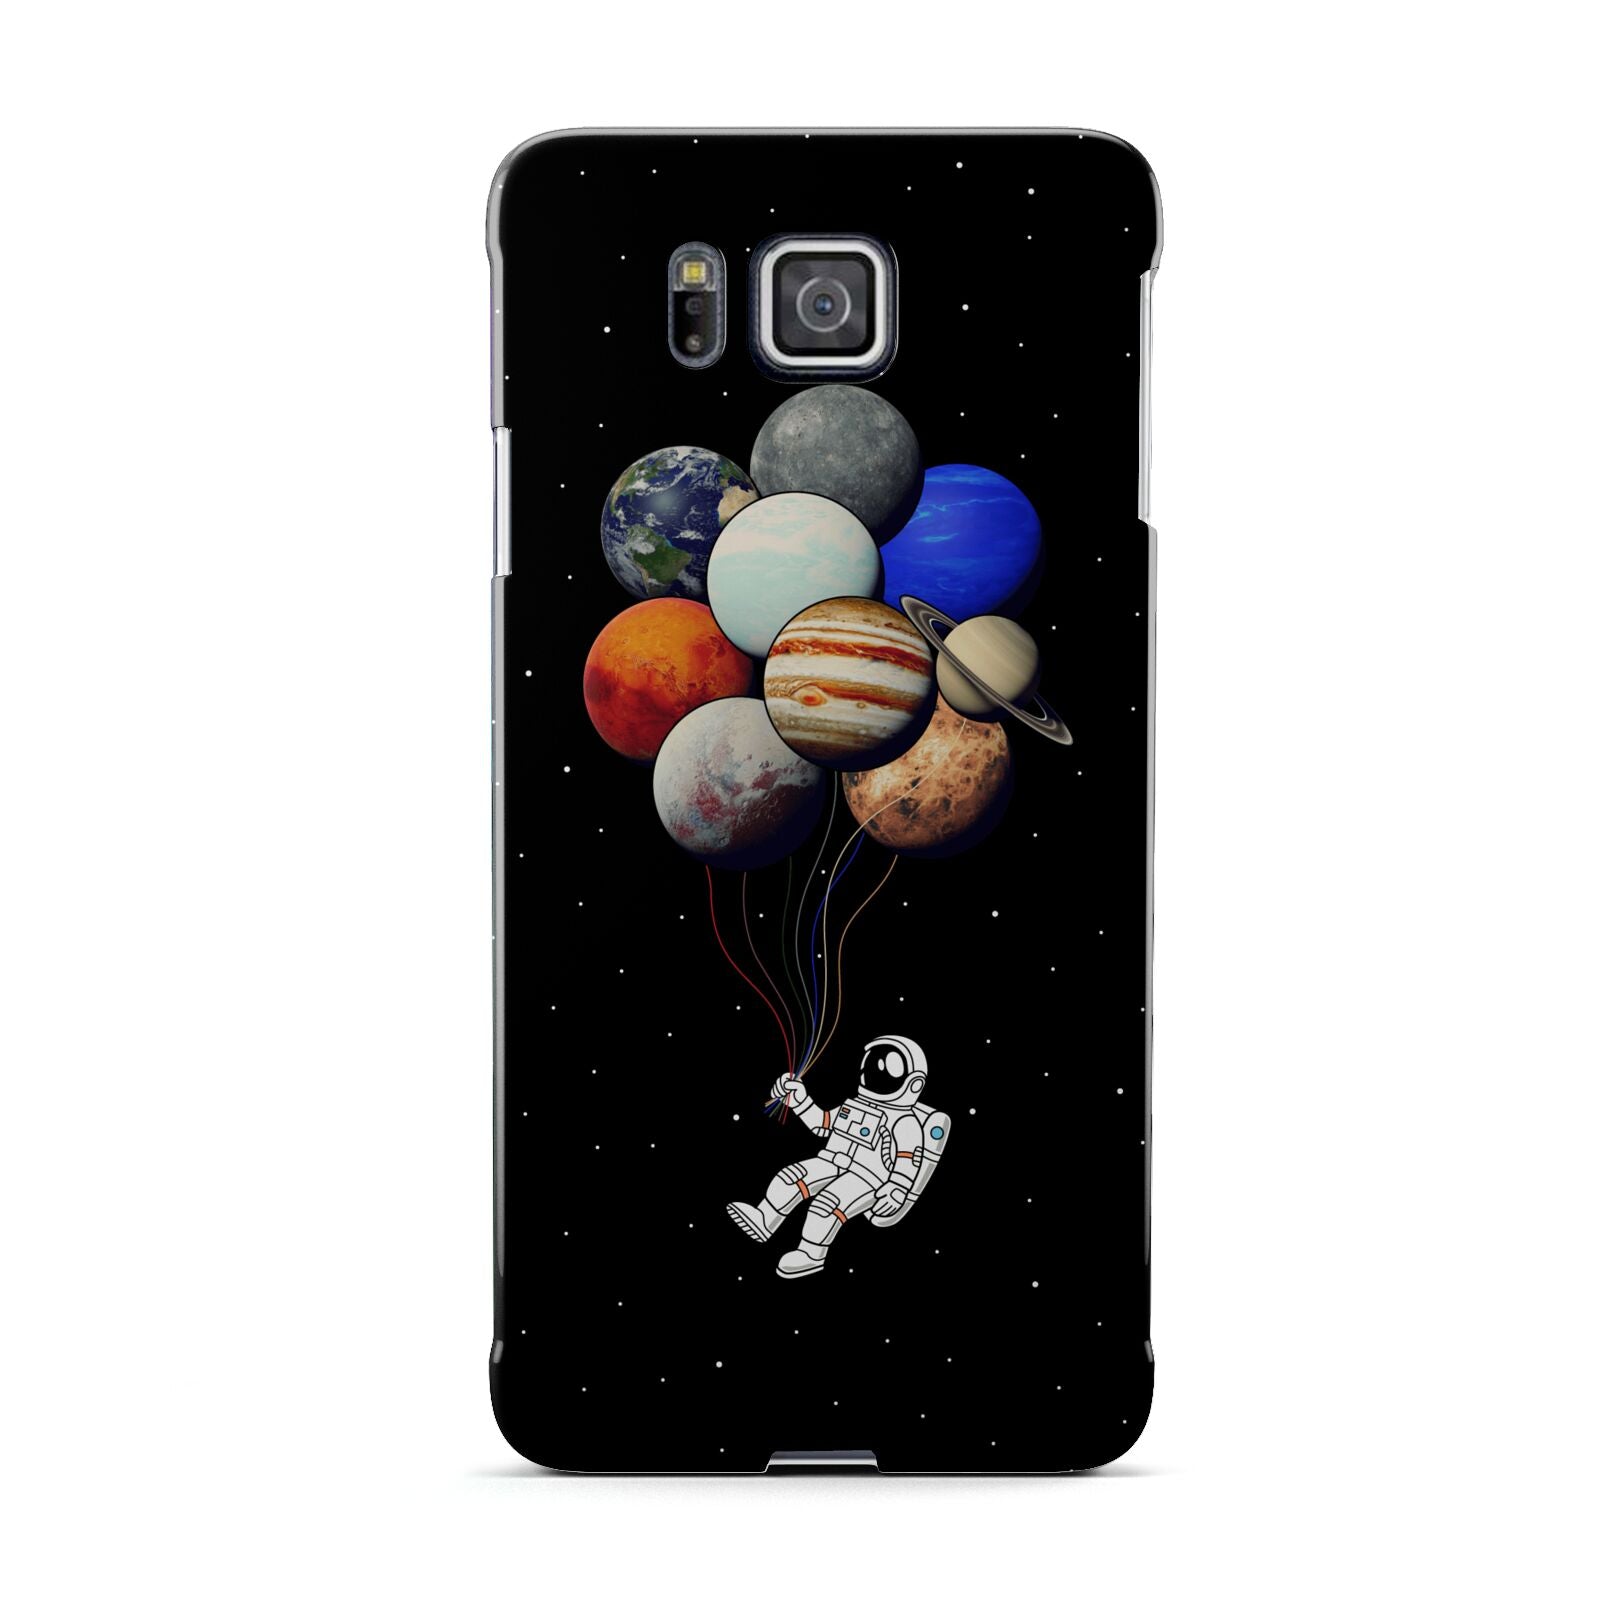 Astronaut Planet Balloons Samsung Galaxy Alpha Case